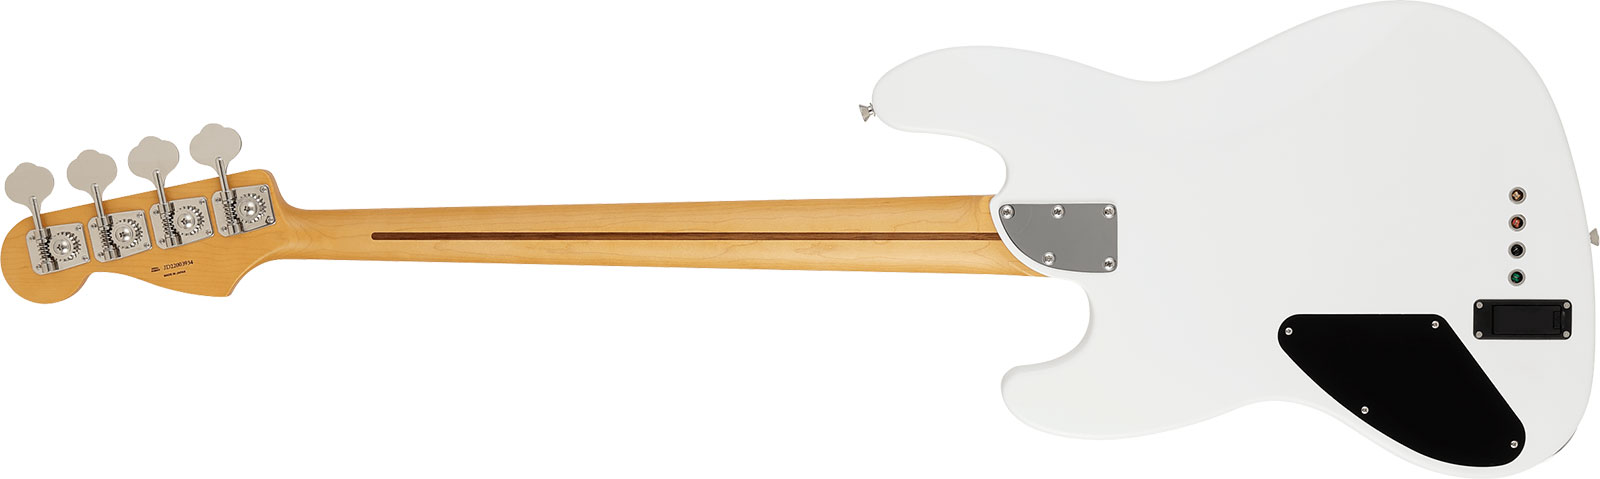 Fender Jazz Bass Elemental Mij Jap Active Rw - Nimbus White - Basse Électrique Solid Body - Variation 1